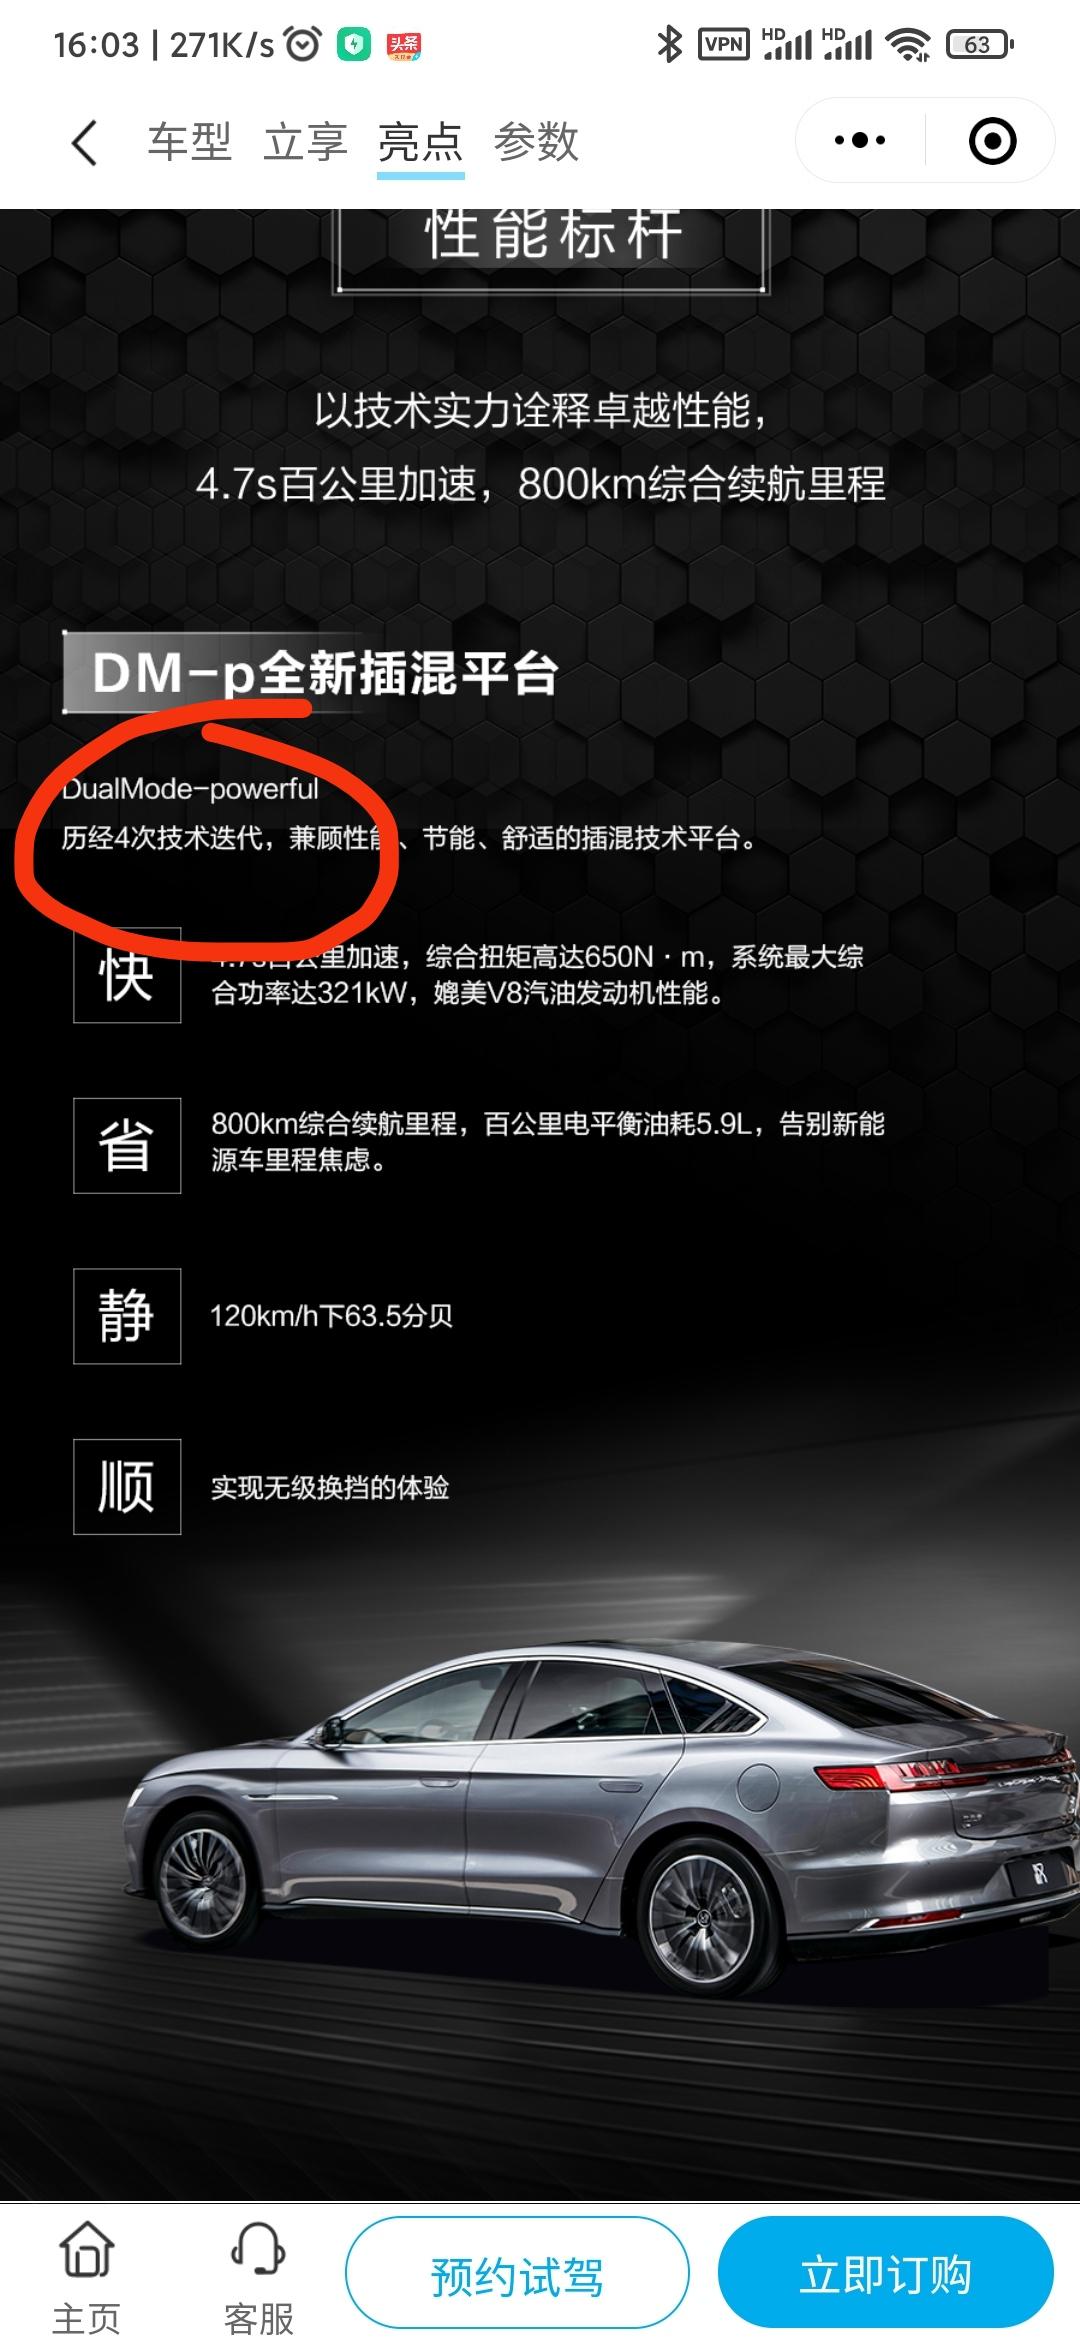 目前(2021.10)汉DM是跟dmi同样的第四代的dmp？不是说跟dmi同代的dmp还没发布吗？汉dmi都还没有